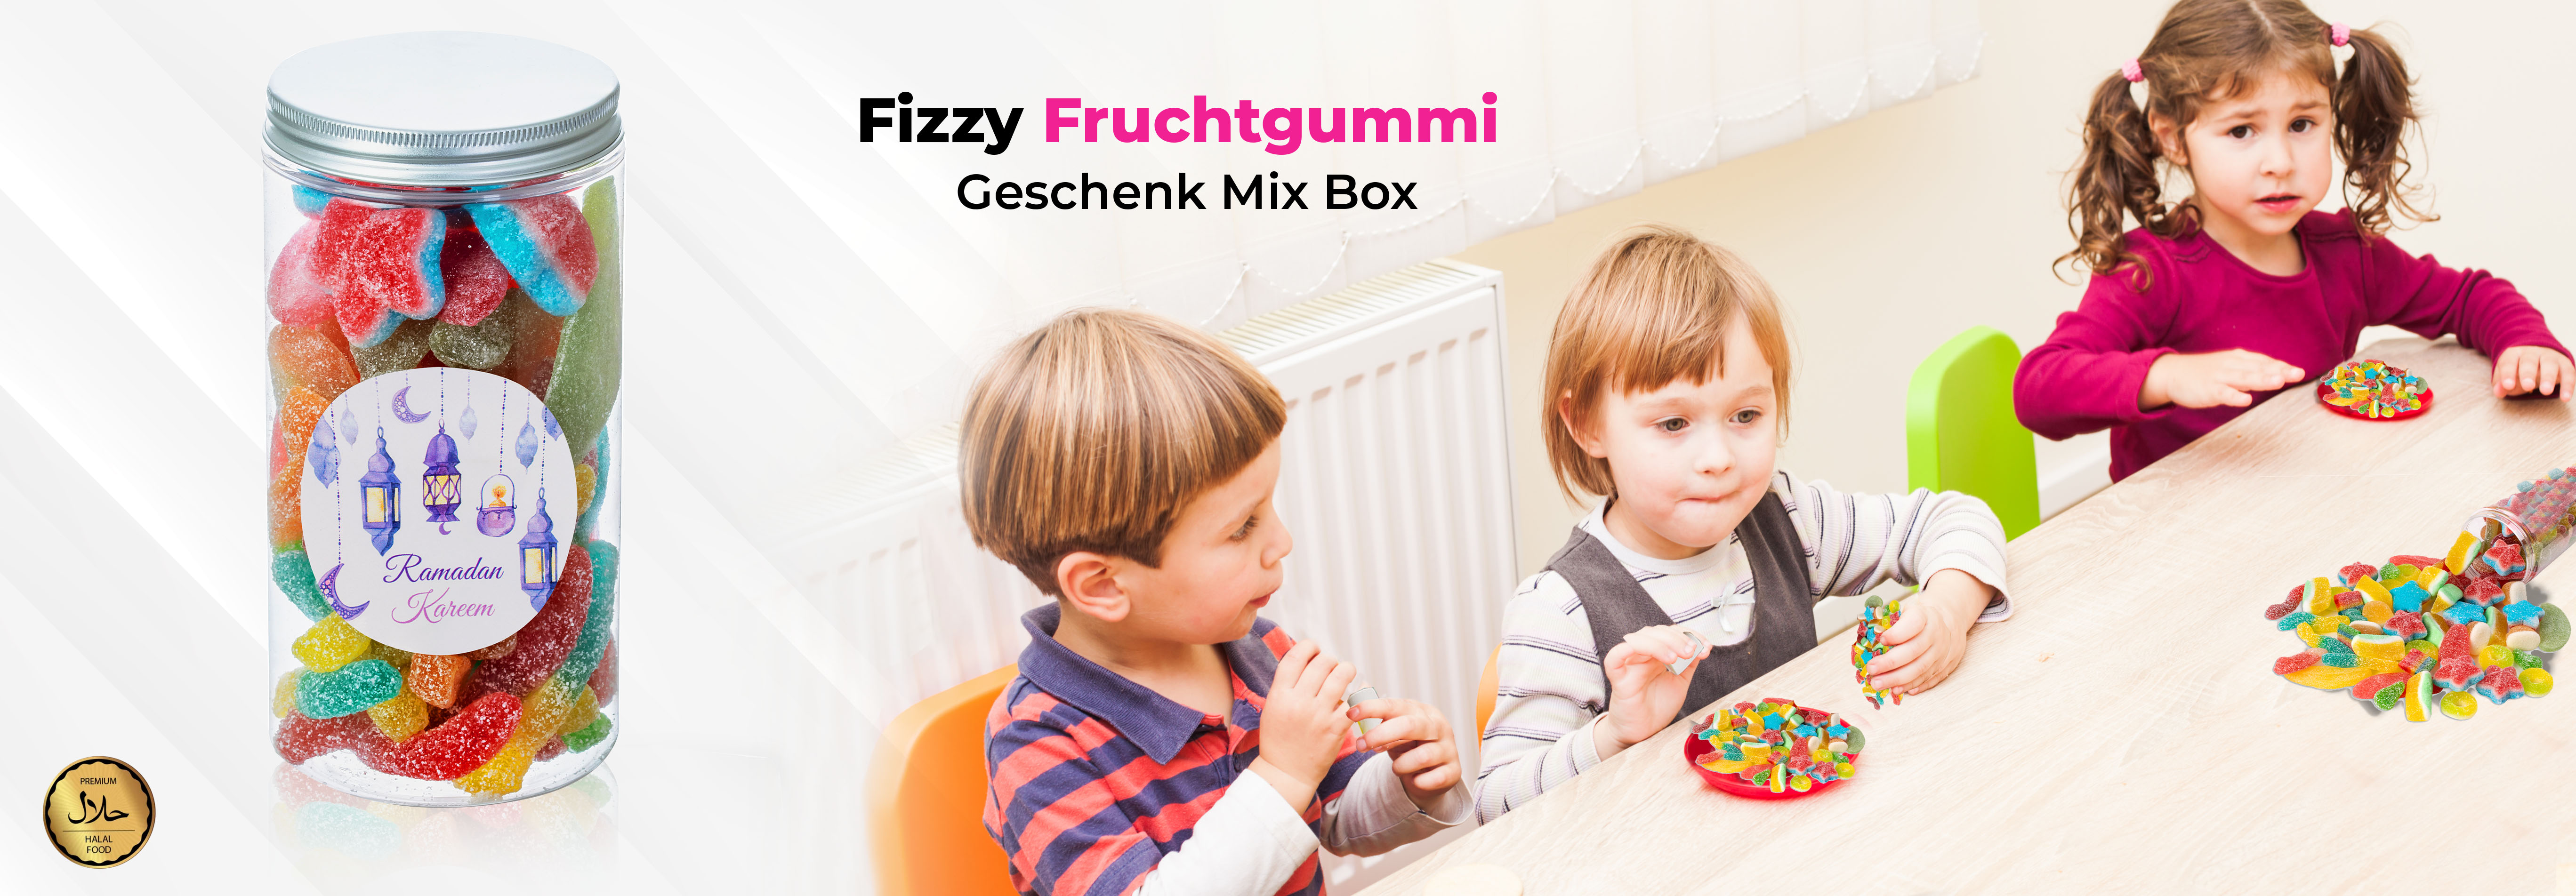 Fizzy Fruchtgummi Geschenk Mix Box